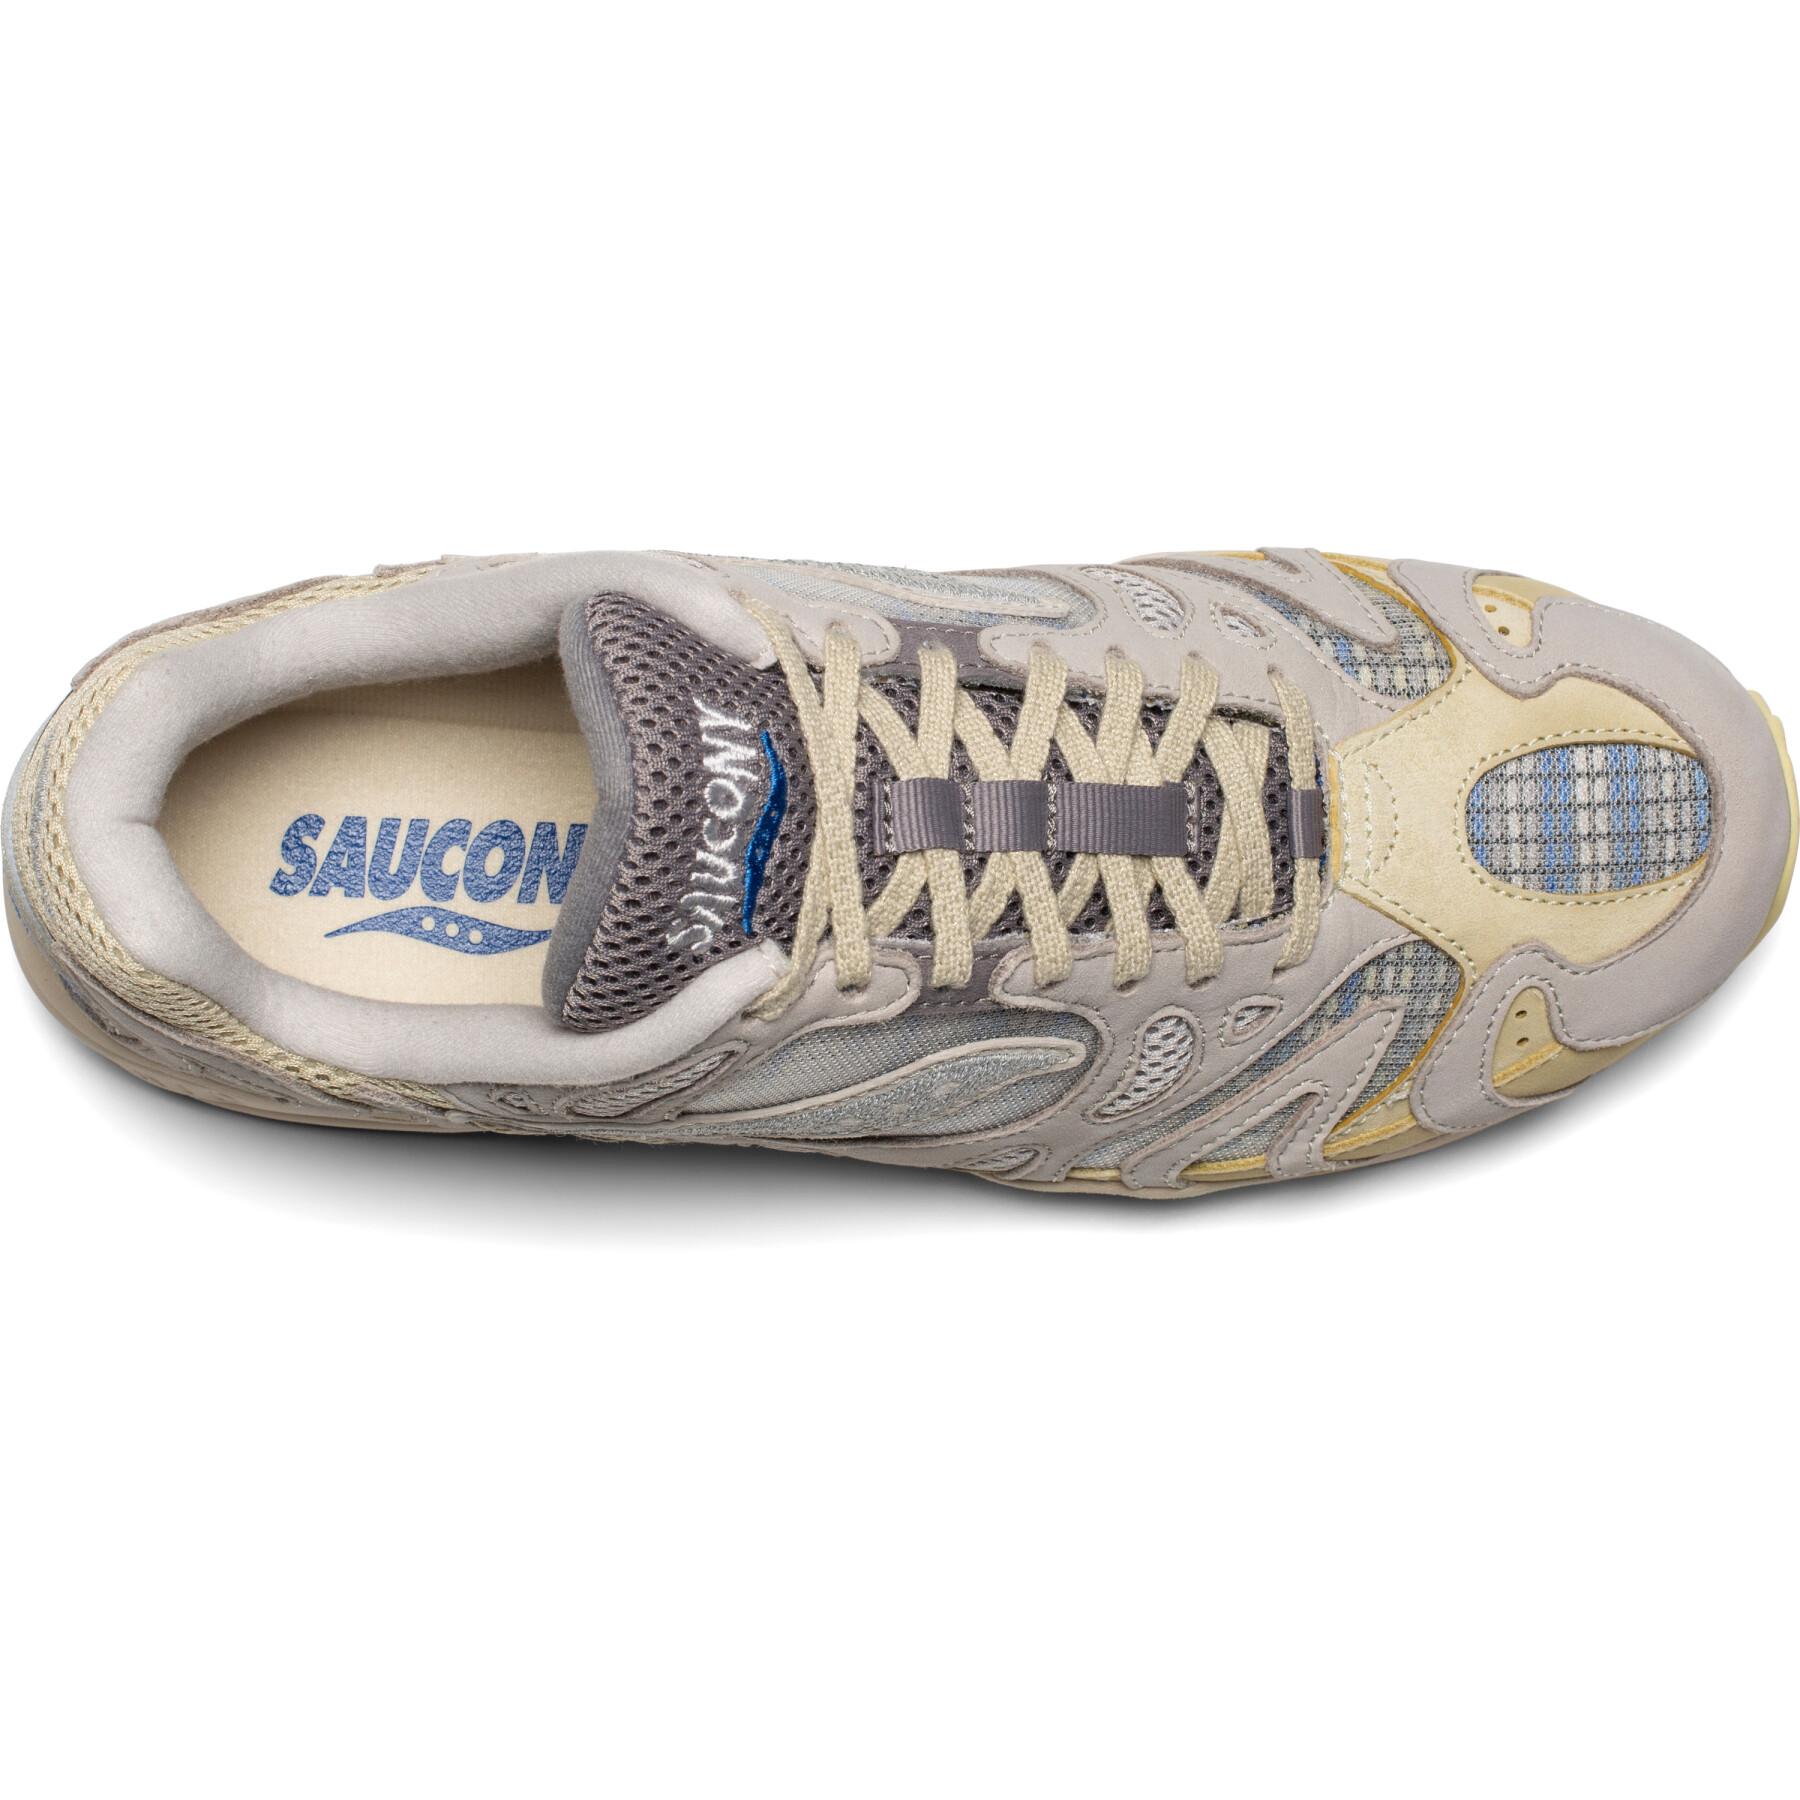 Sneakers Saucony grid azura 2000